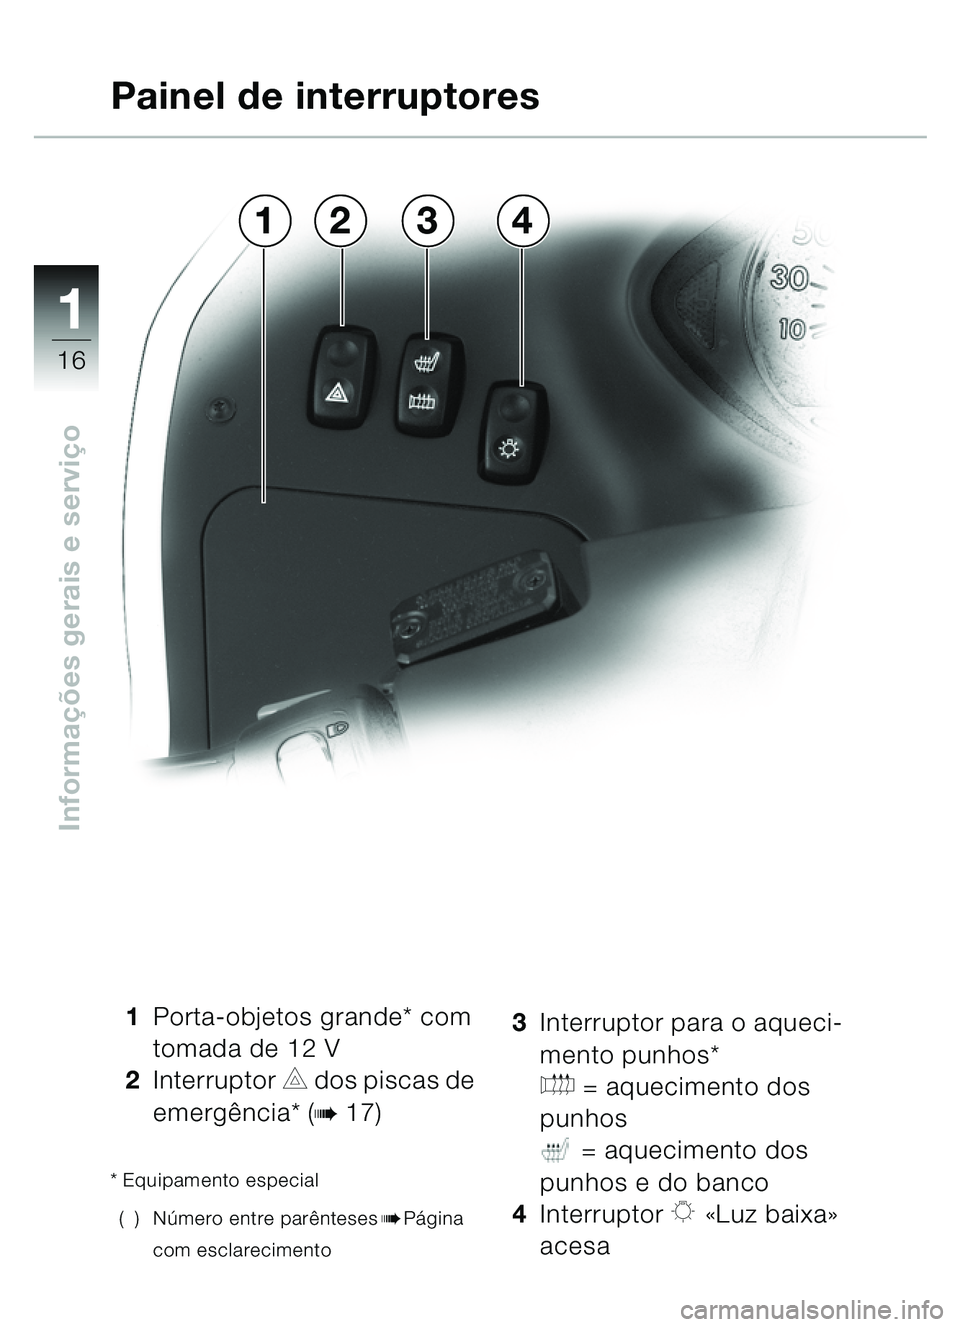 BMW MOTORRAD C1 2000  Manual do condutor (in Portuguese) 11
16
Informações gerais e servi ço
1 Porta-objetos grande* com 
tomada de 12 V
2 Interruptor 
C dos piscas de 
emerg ência* (
b17)
* Equipamento especial
() N úmero entre parê nteses
bPágina 
